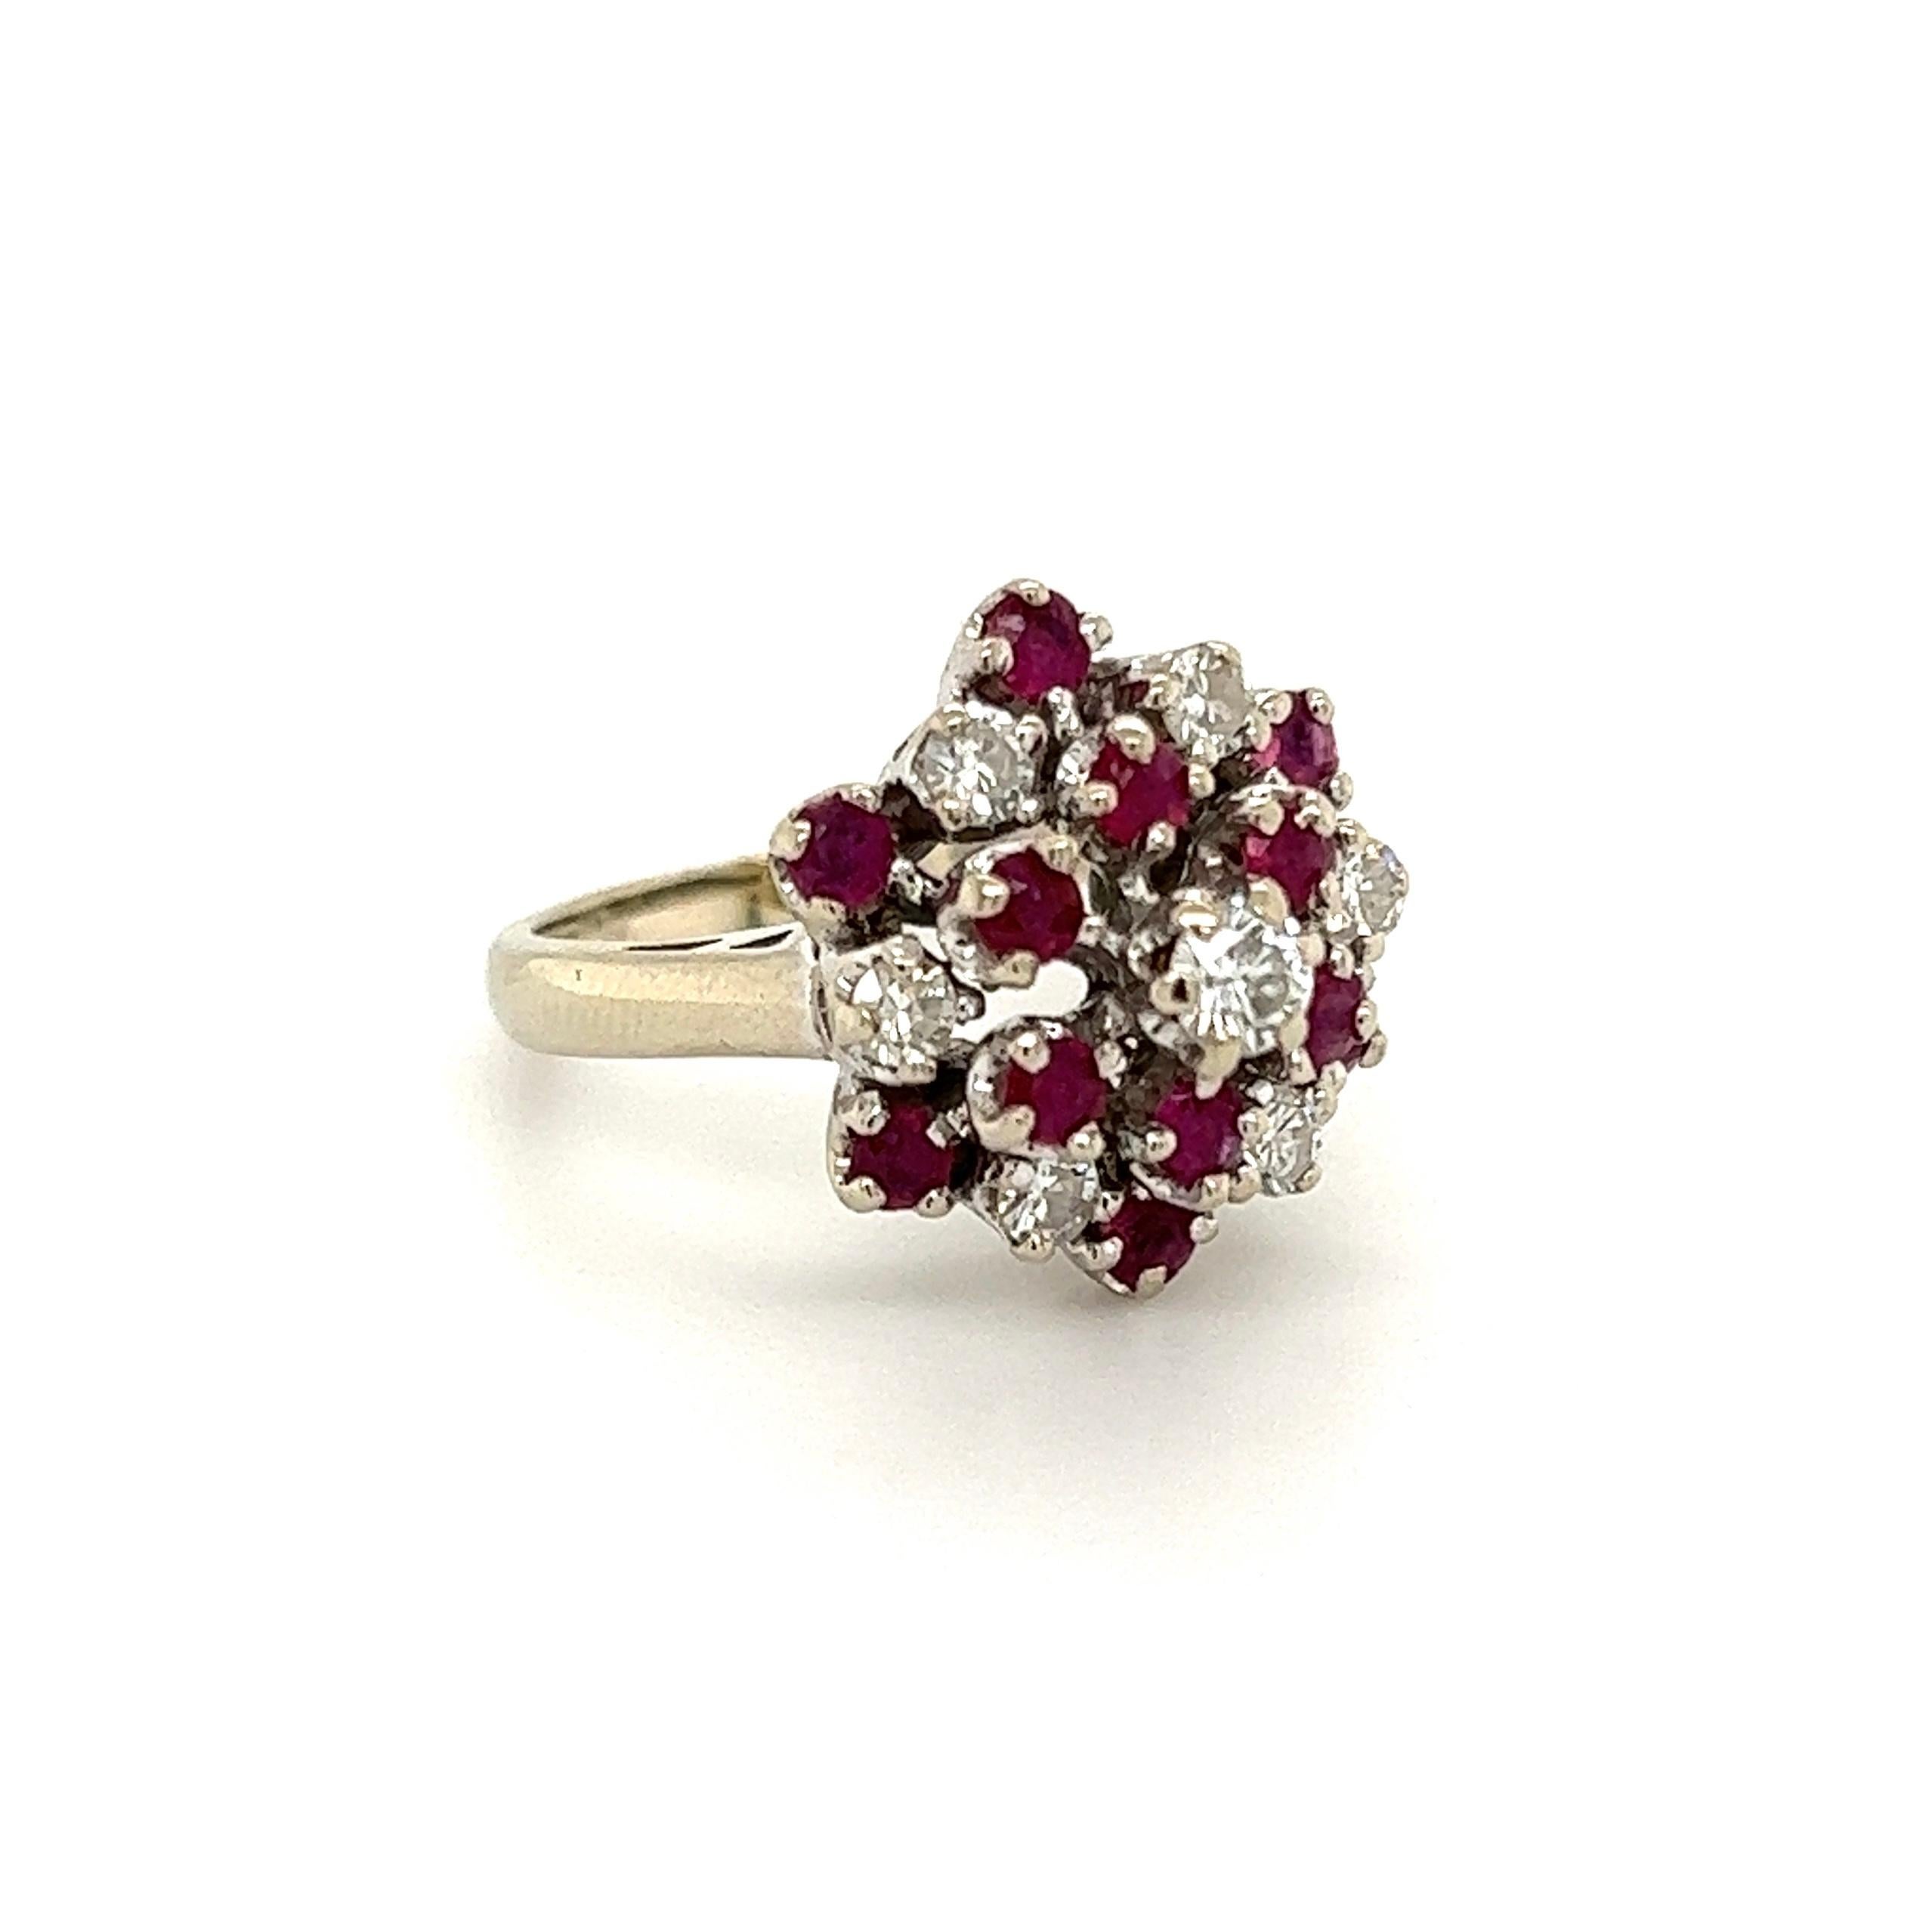 Schöner Rubin- und Diamant-Cluster-Ring, handbesetzt mit Diamanten mit einem Gewicht von ca. 0,48 tcw und Rubinen, ca. 0,90 tcw. Der Ring ist handgefertigt in 14K Weißgold. Maße: ca. 1,12 